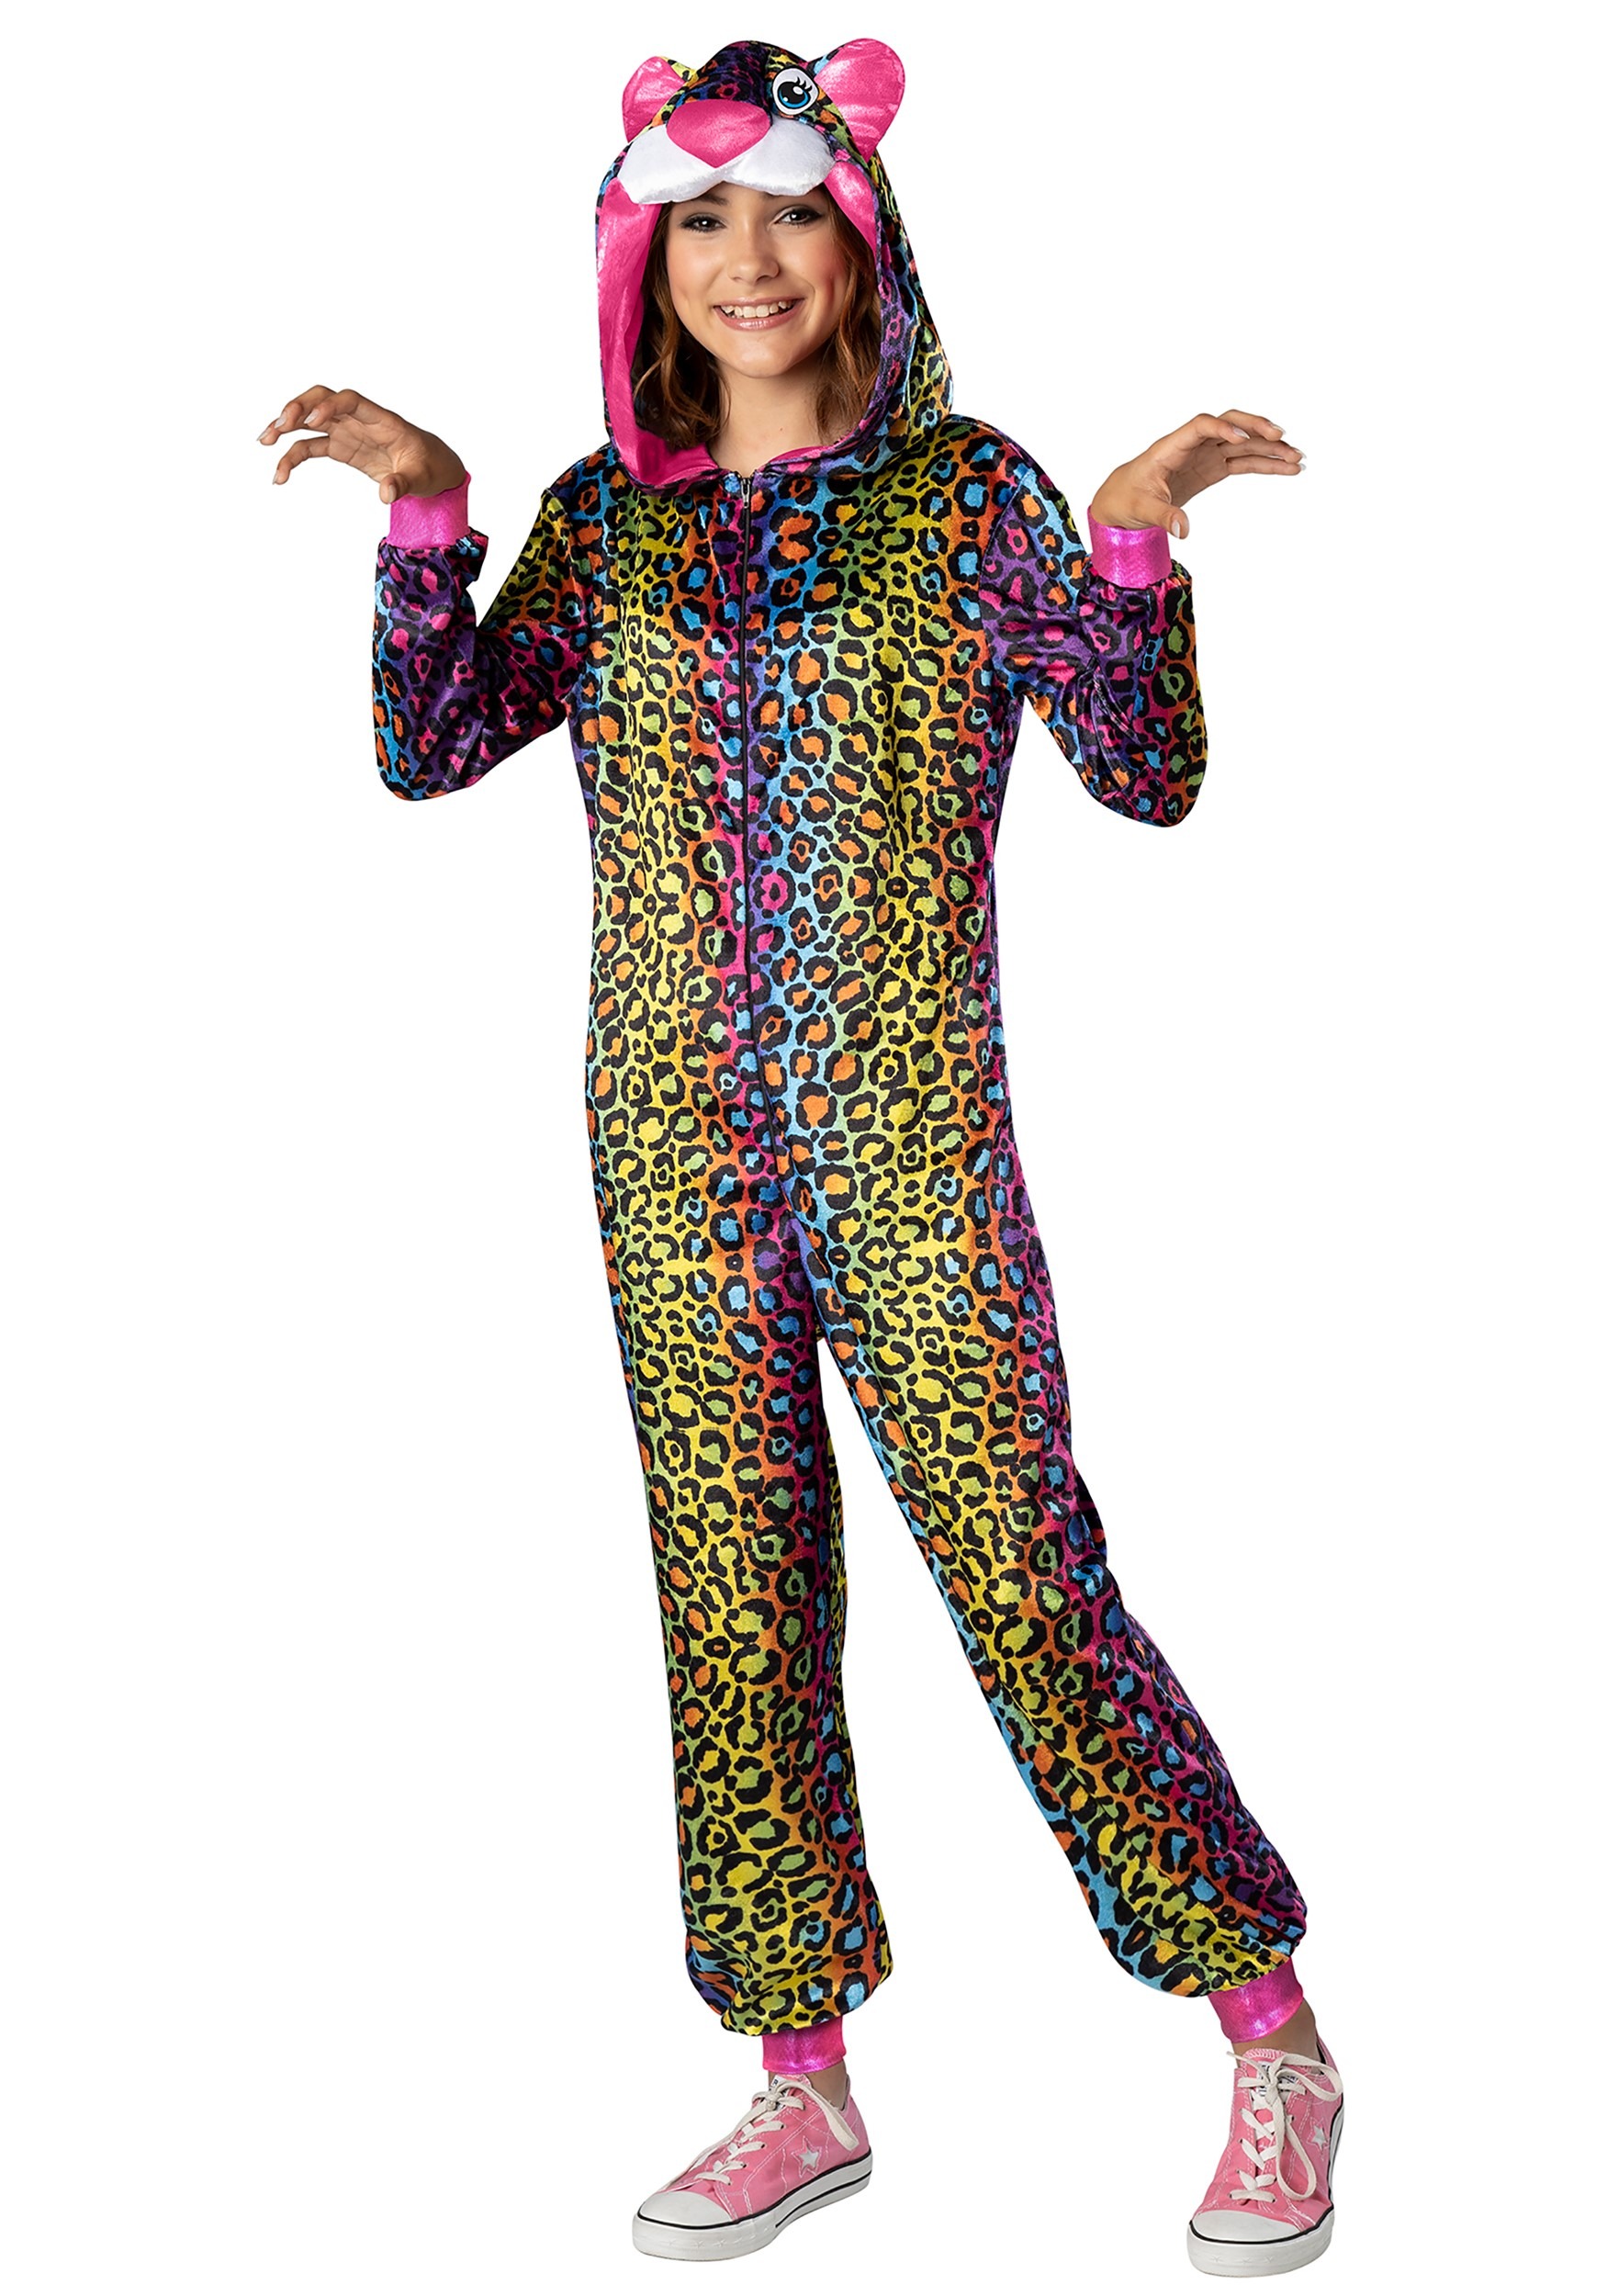 Neon Leopard Costume for Tweens